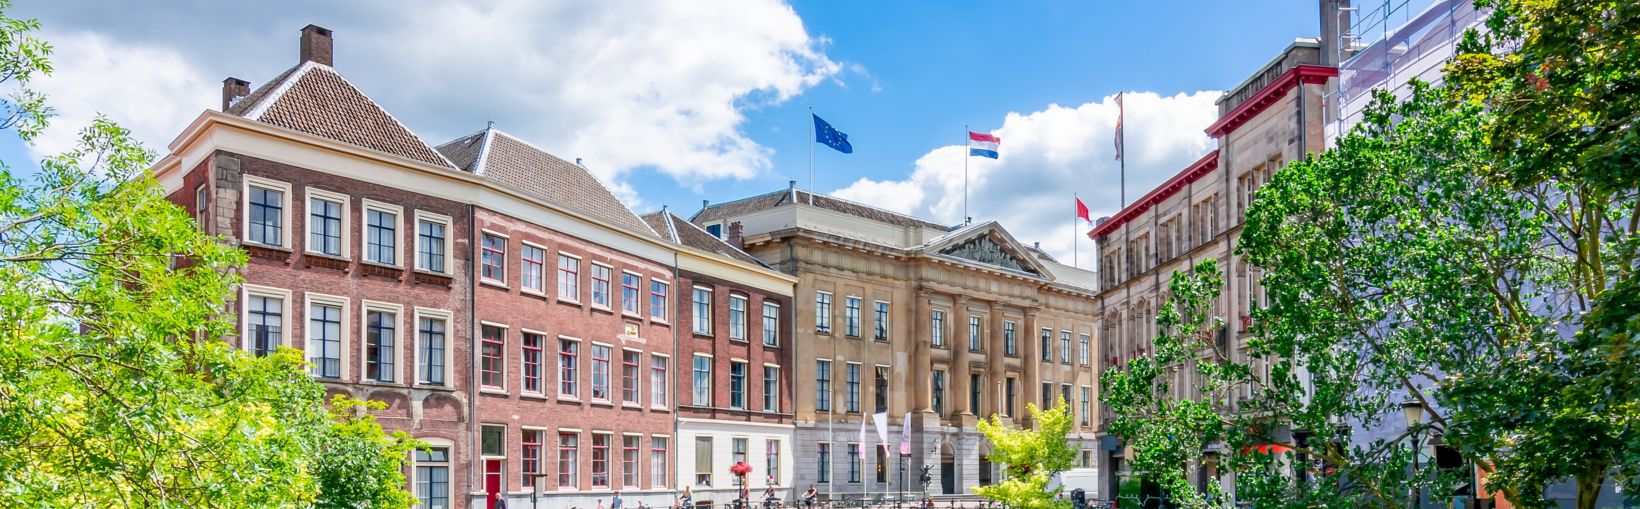 Architettura di Utrecht e canali a due livelli in estate, Paesi Bassi